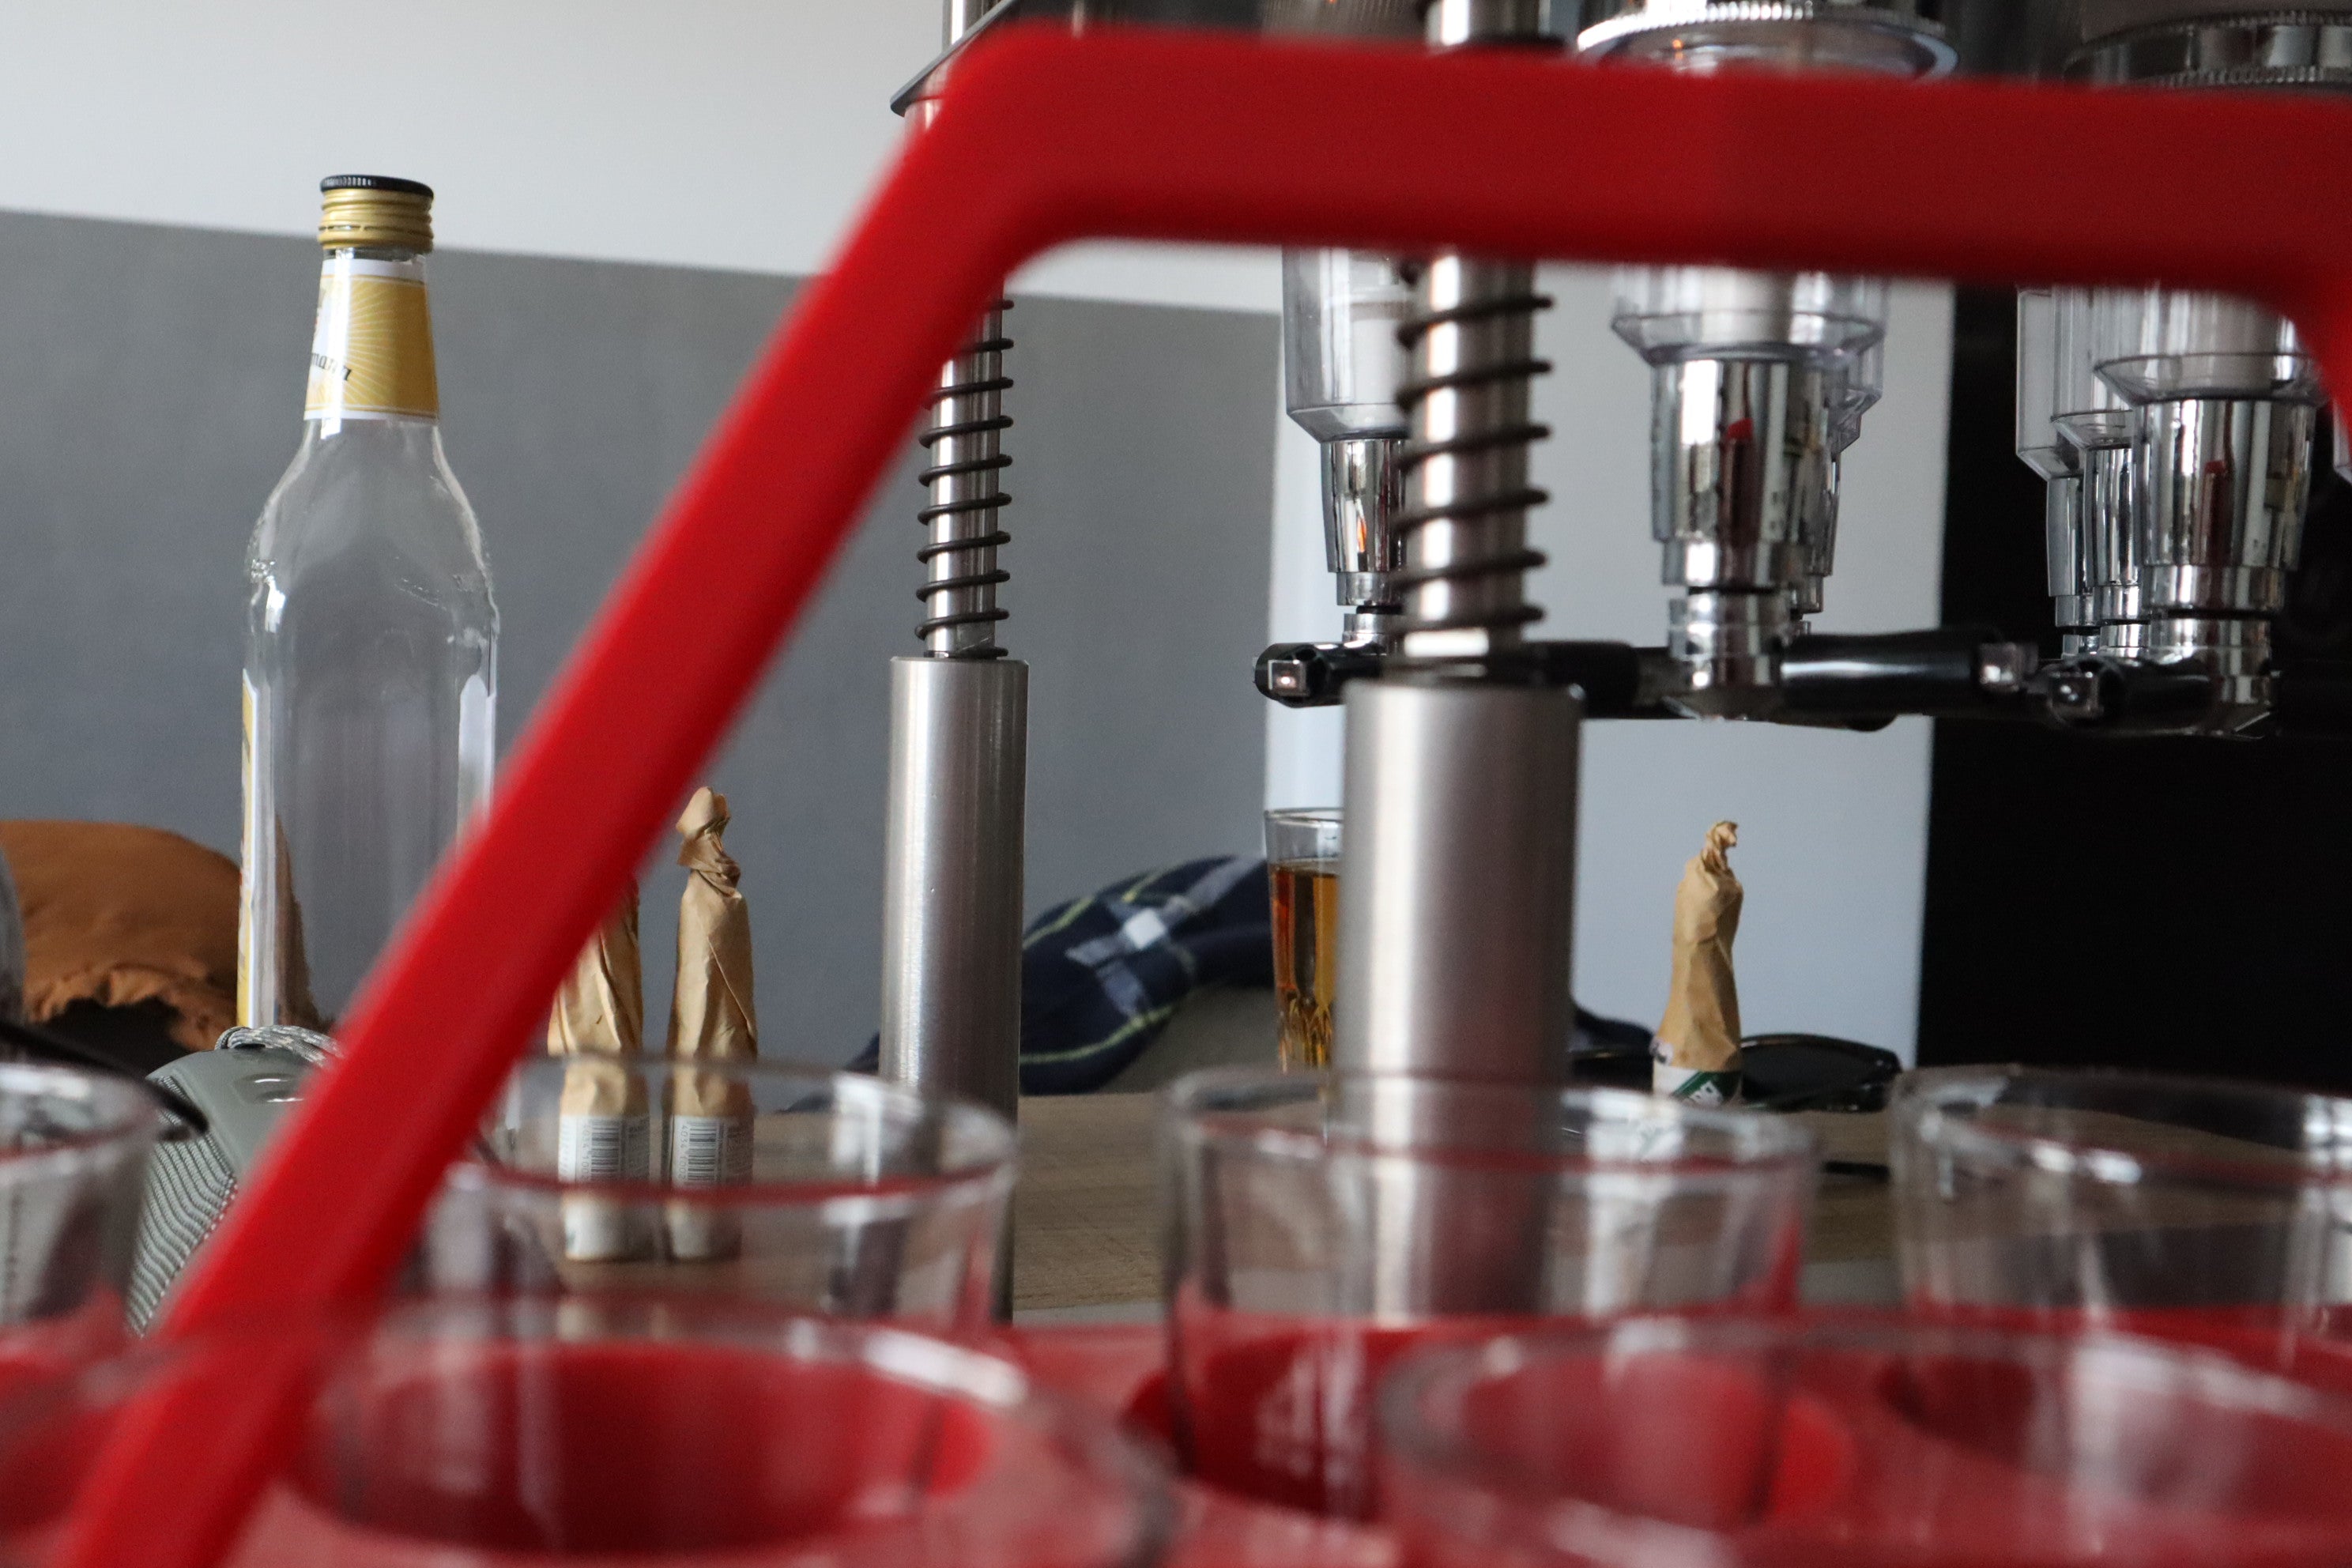 Zapfmaschine, Dosierer und Gläserträger für Getränke - professionelle Barausstattung für effiziente Getränkezubereitung